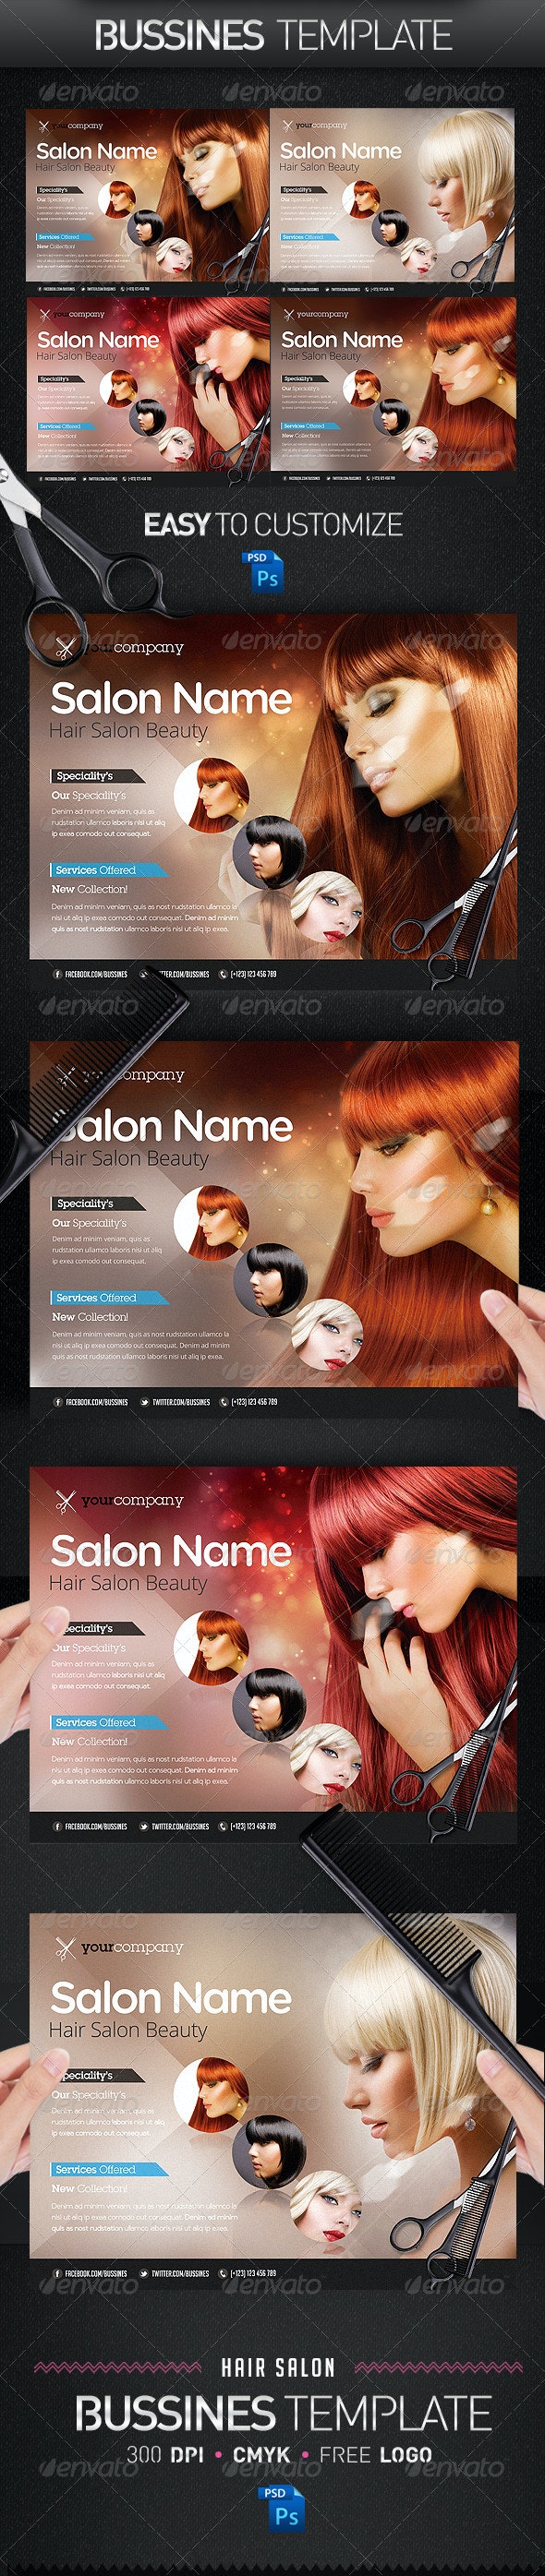 فایل لایه باز تراکت سالن زیبایی Hair Salon PRO Bussines Promotional Flyer